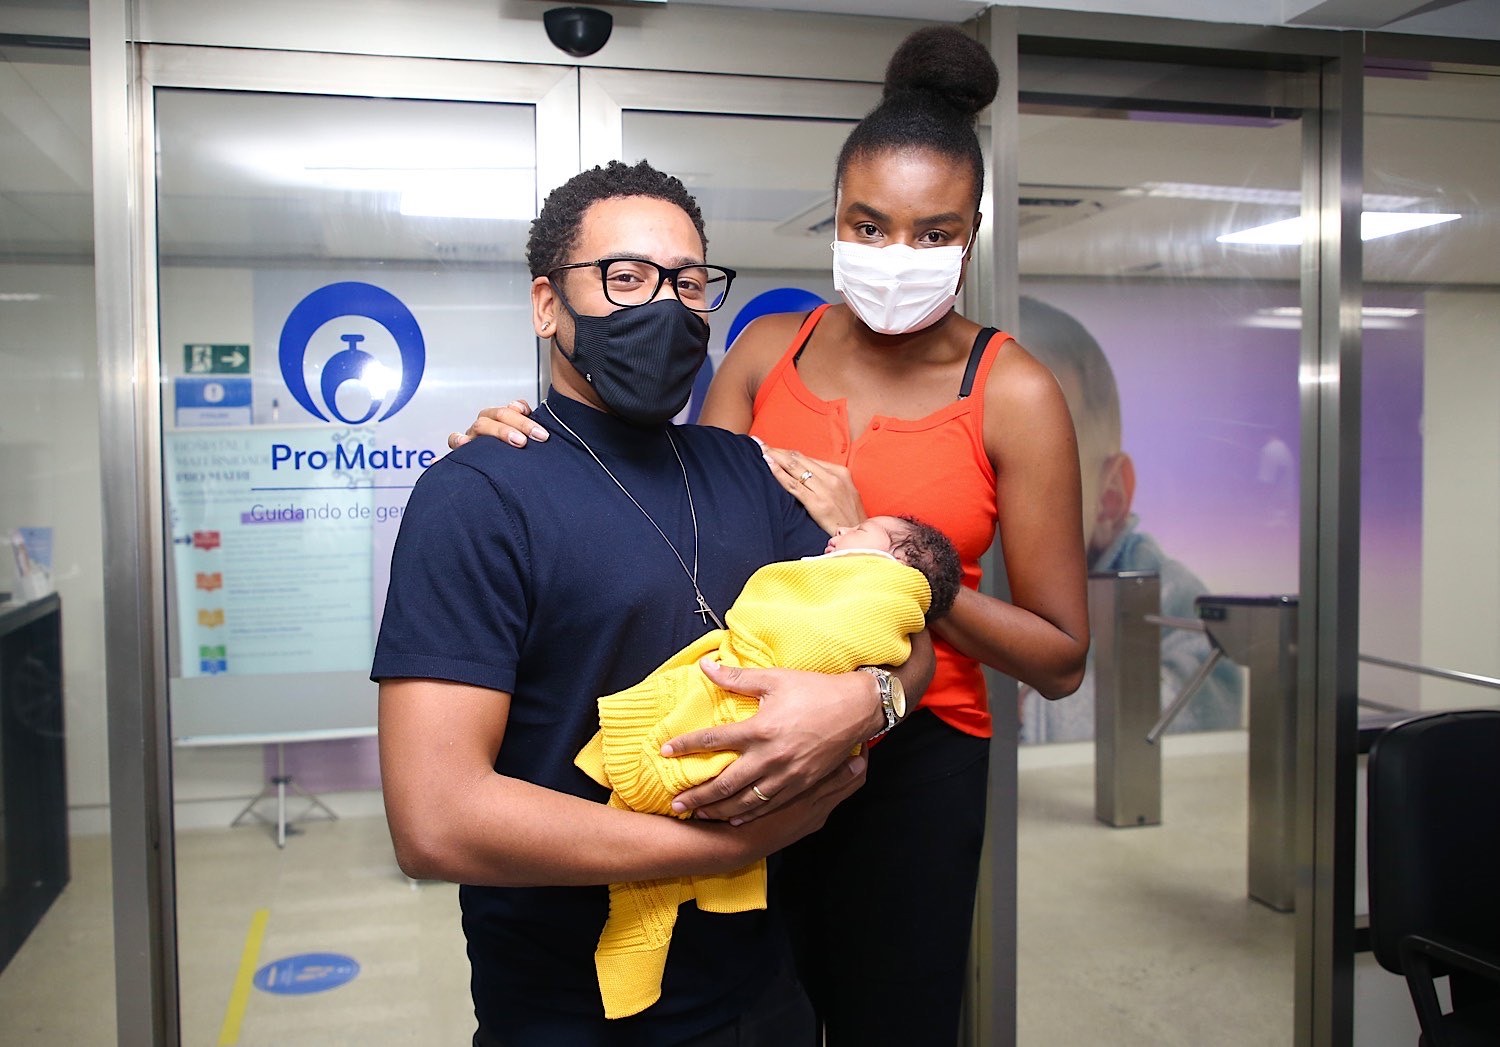 Fabi Claudino e Vini Gram deixam maternidade com filho  (Foto: Brazil News)